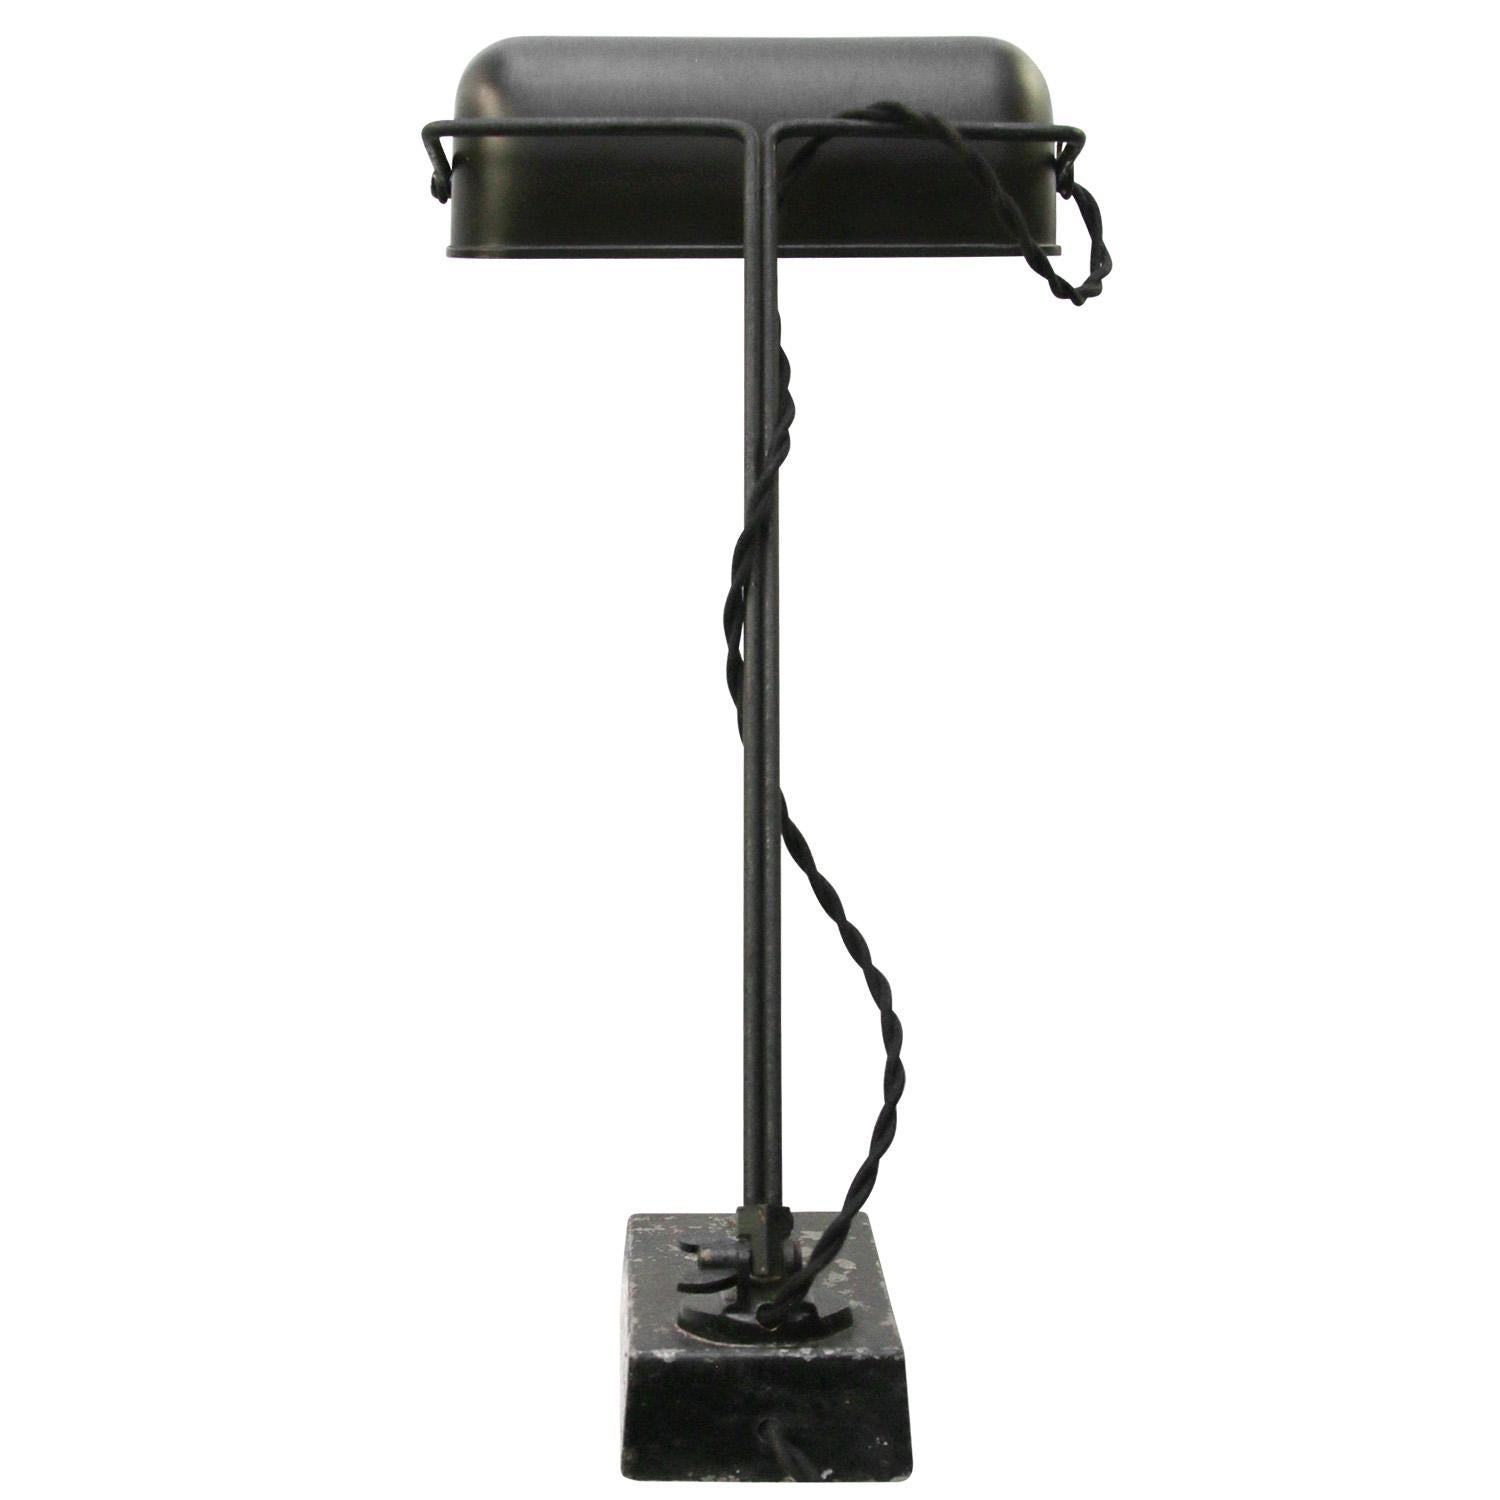 20th Century Belgium Black Bakelite Vintage Industrial Table Desk Light by Erpe